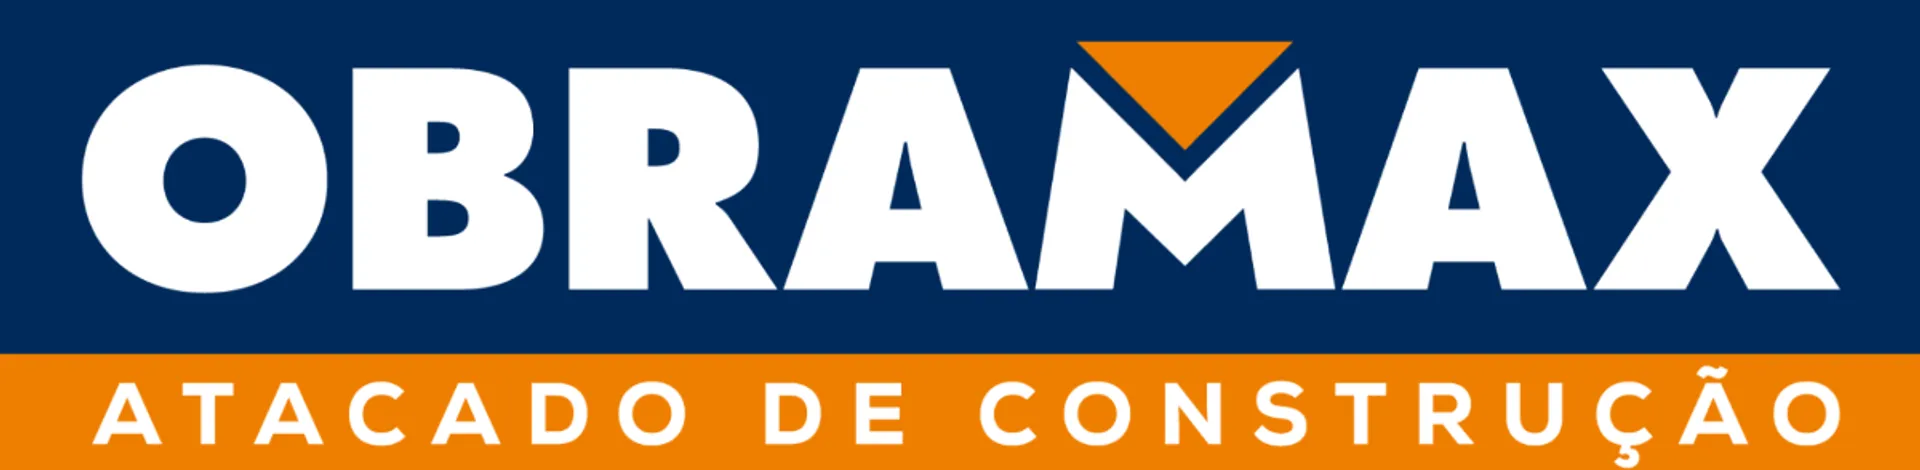 OBRAMAX logo